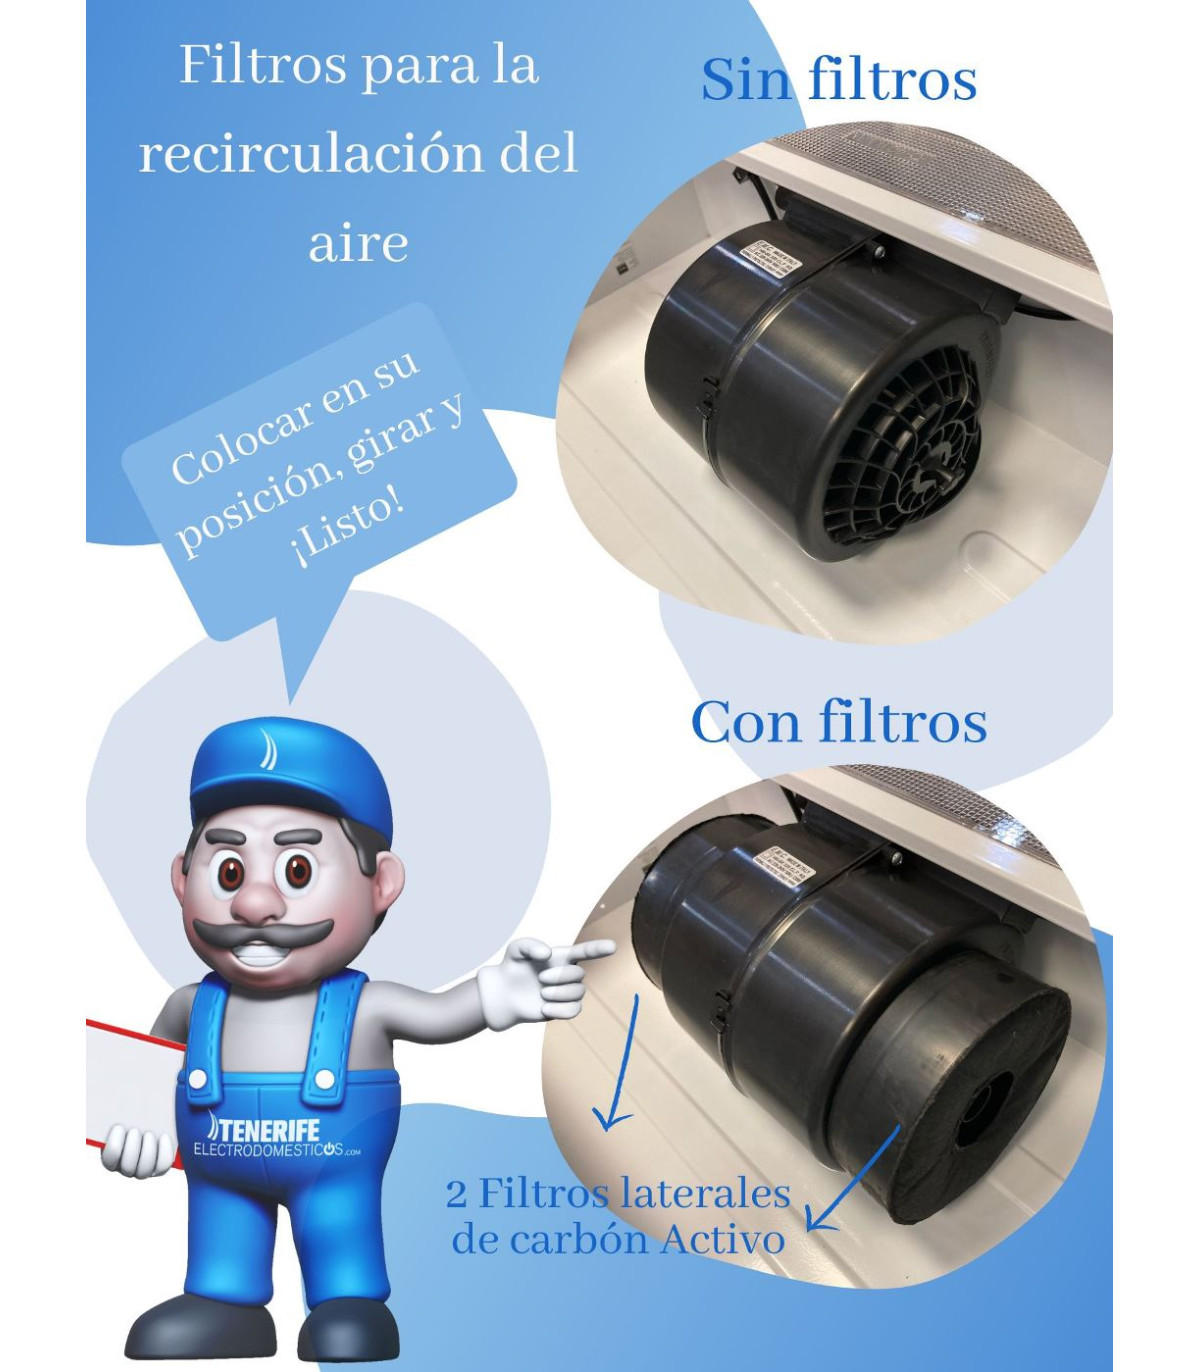 Extractor Teka TL 6310 Inox al Mejor Precio - Canarias Envío【 GRATIS】